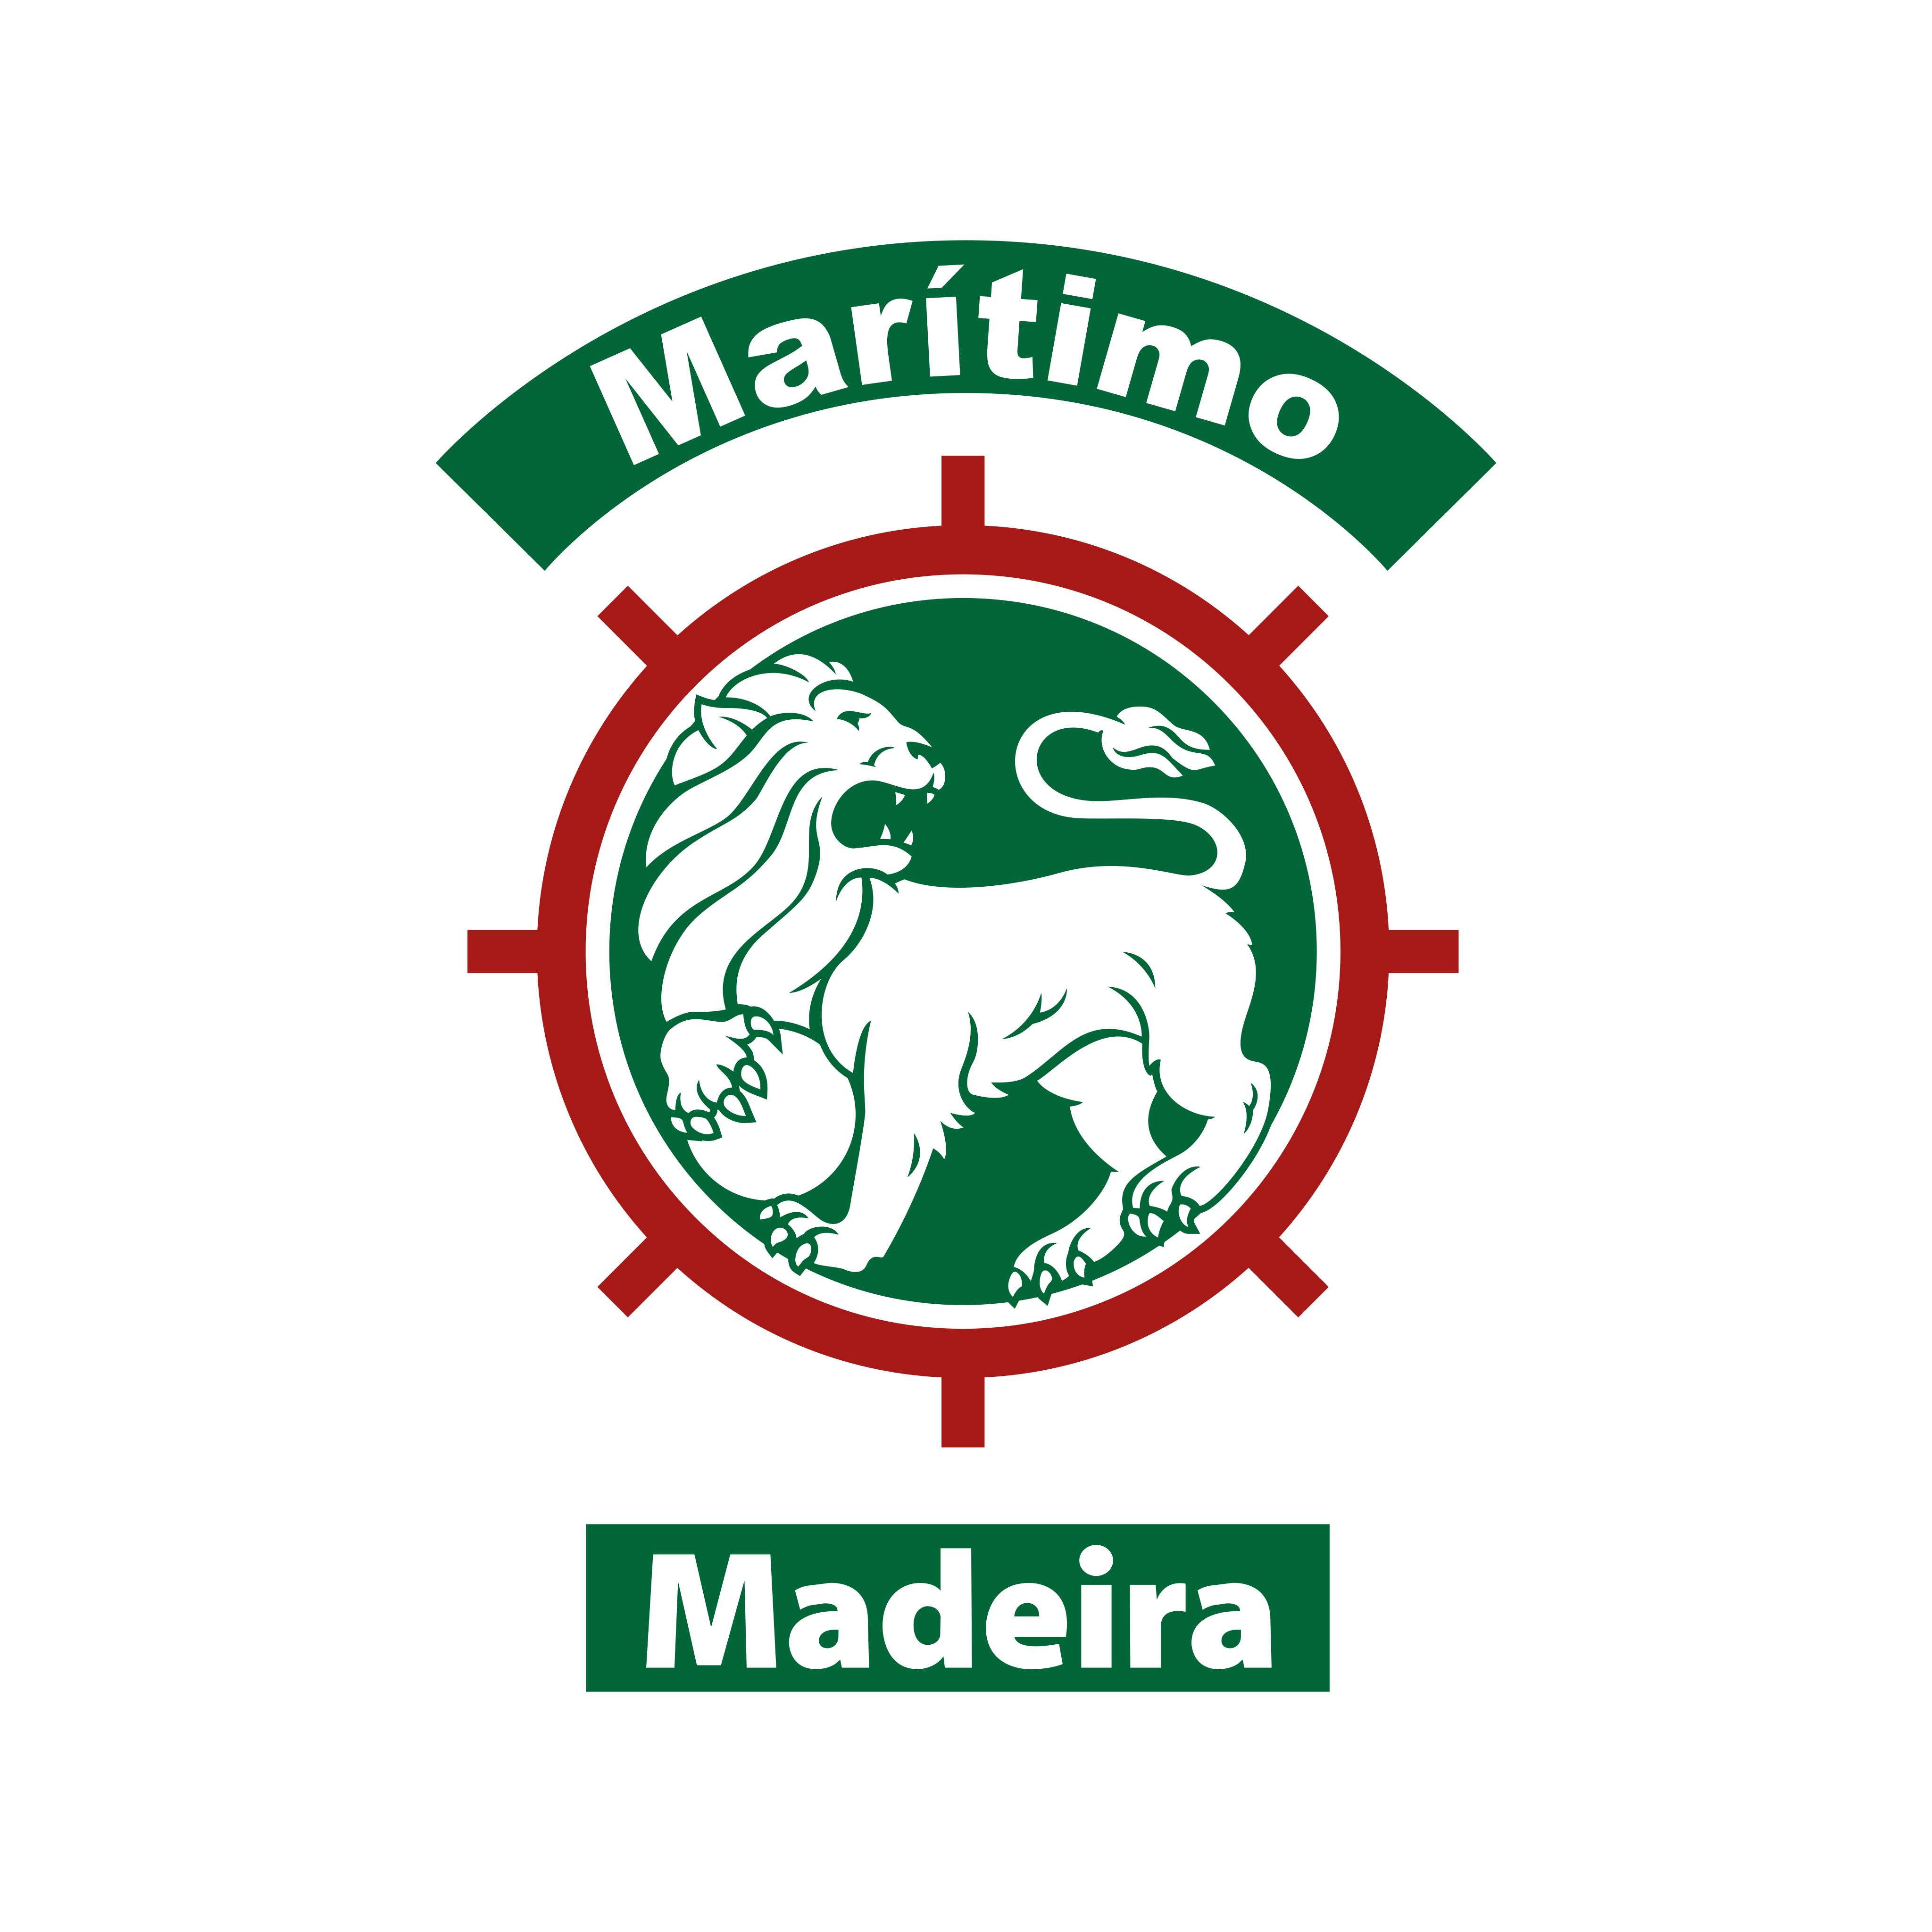 cs maritimo logo 0 - Club Sport Marítimo Logo